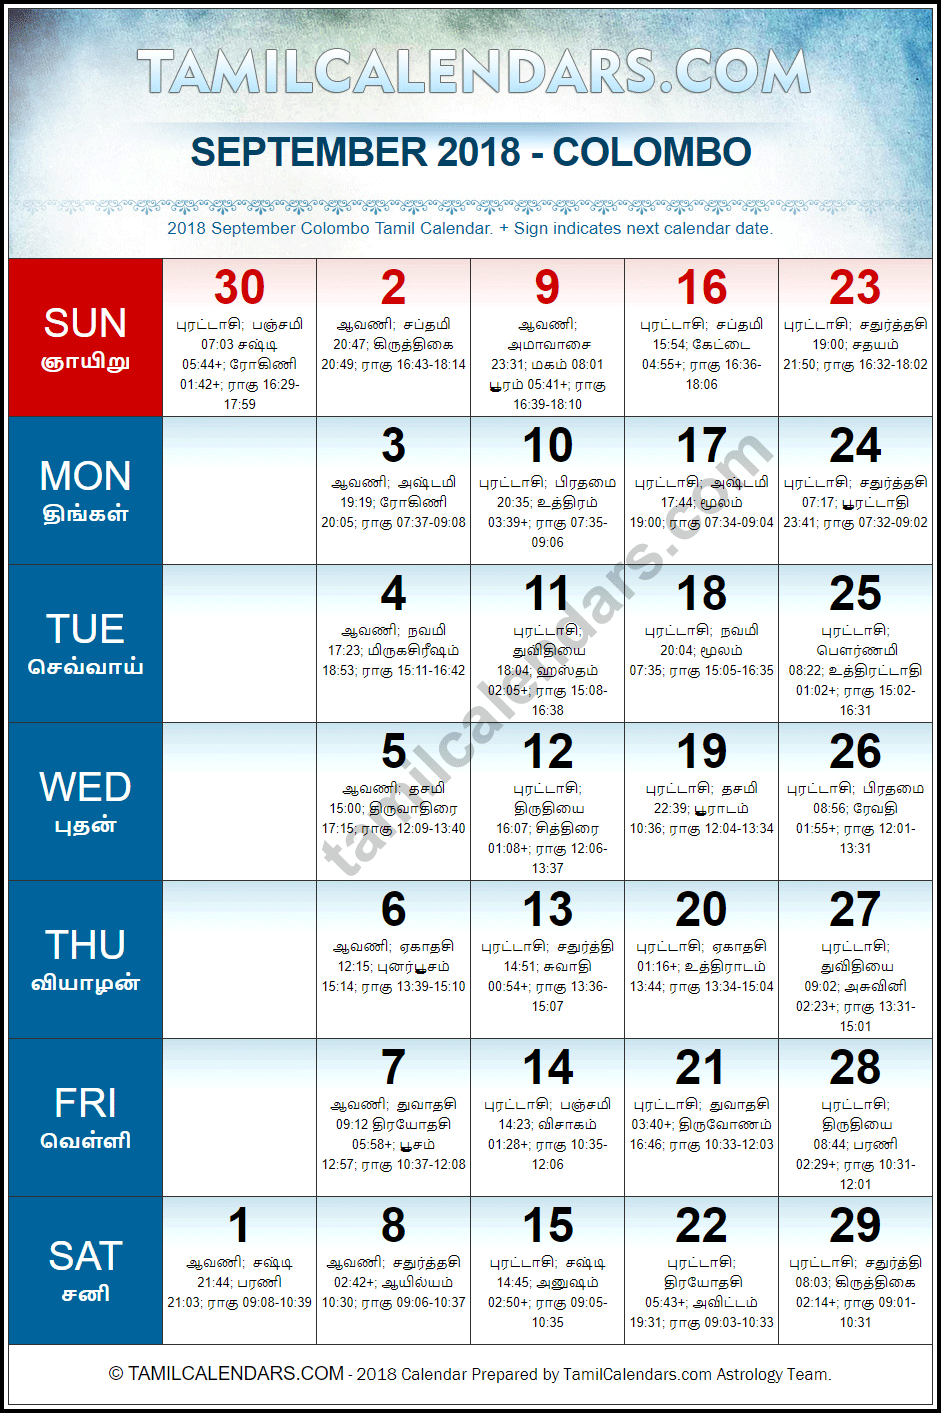 September 2018 Tamil Calendar for Sri Lanka (Colombo)